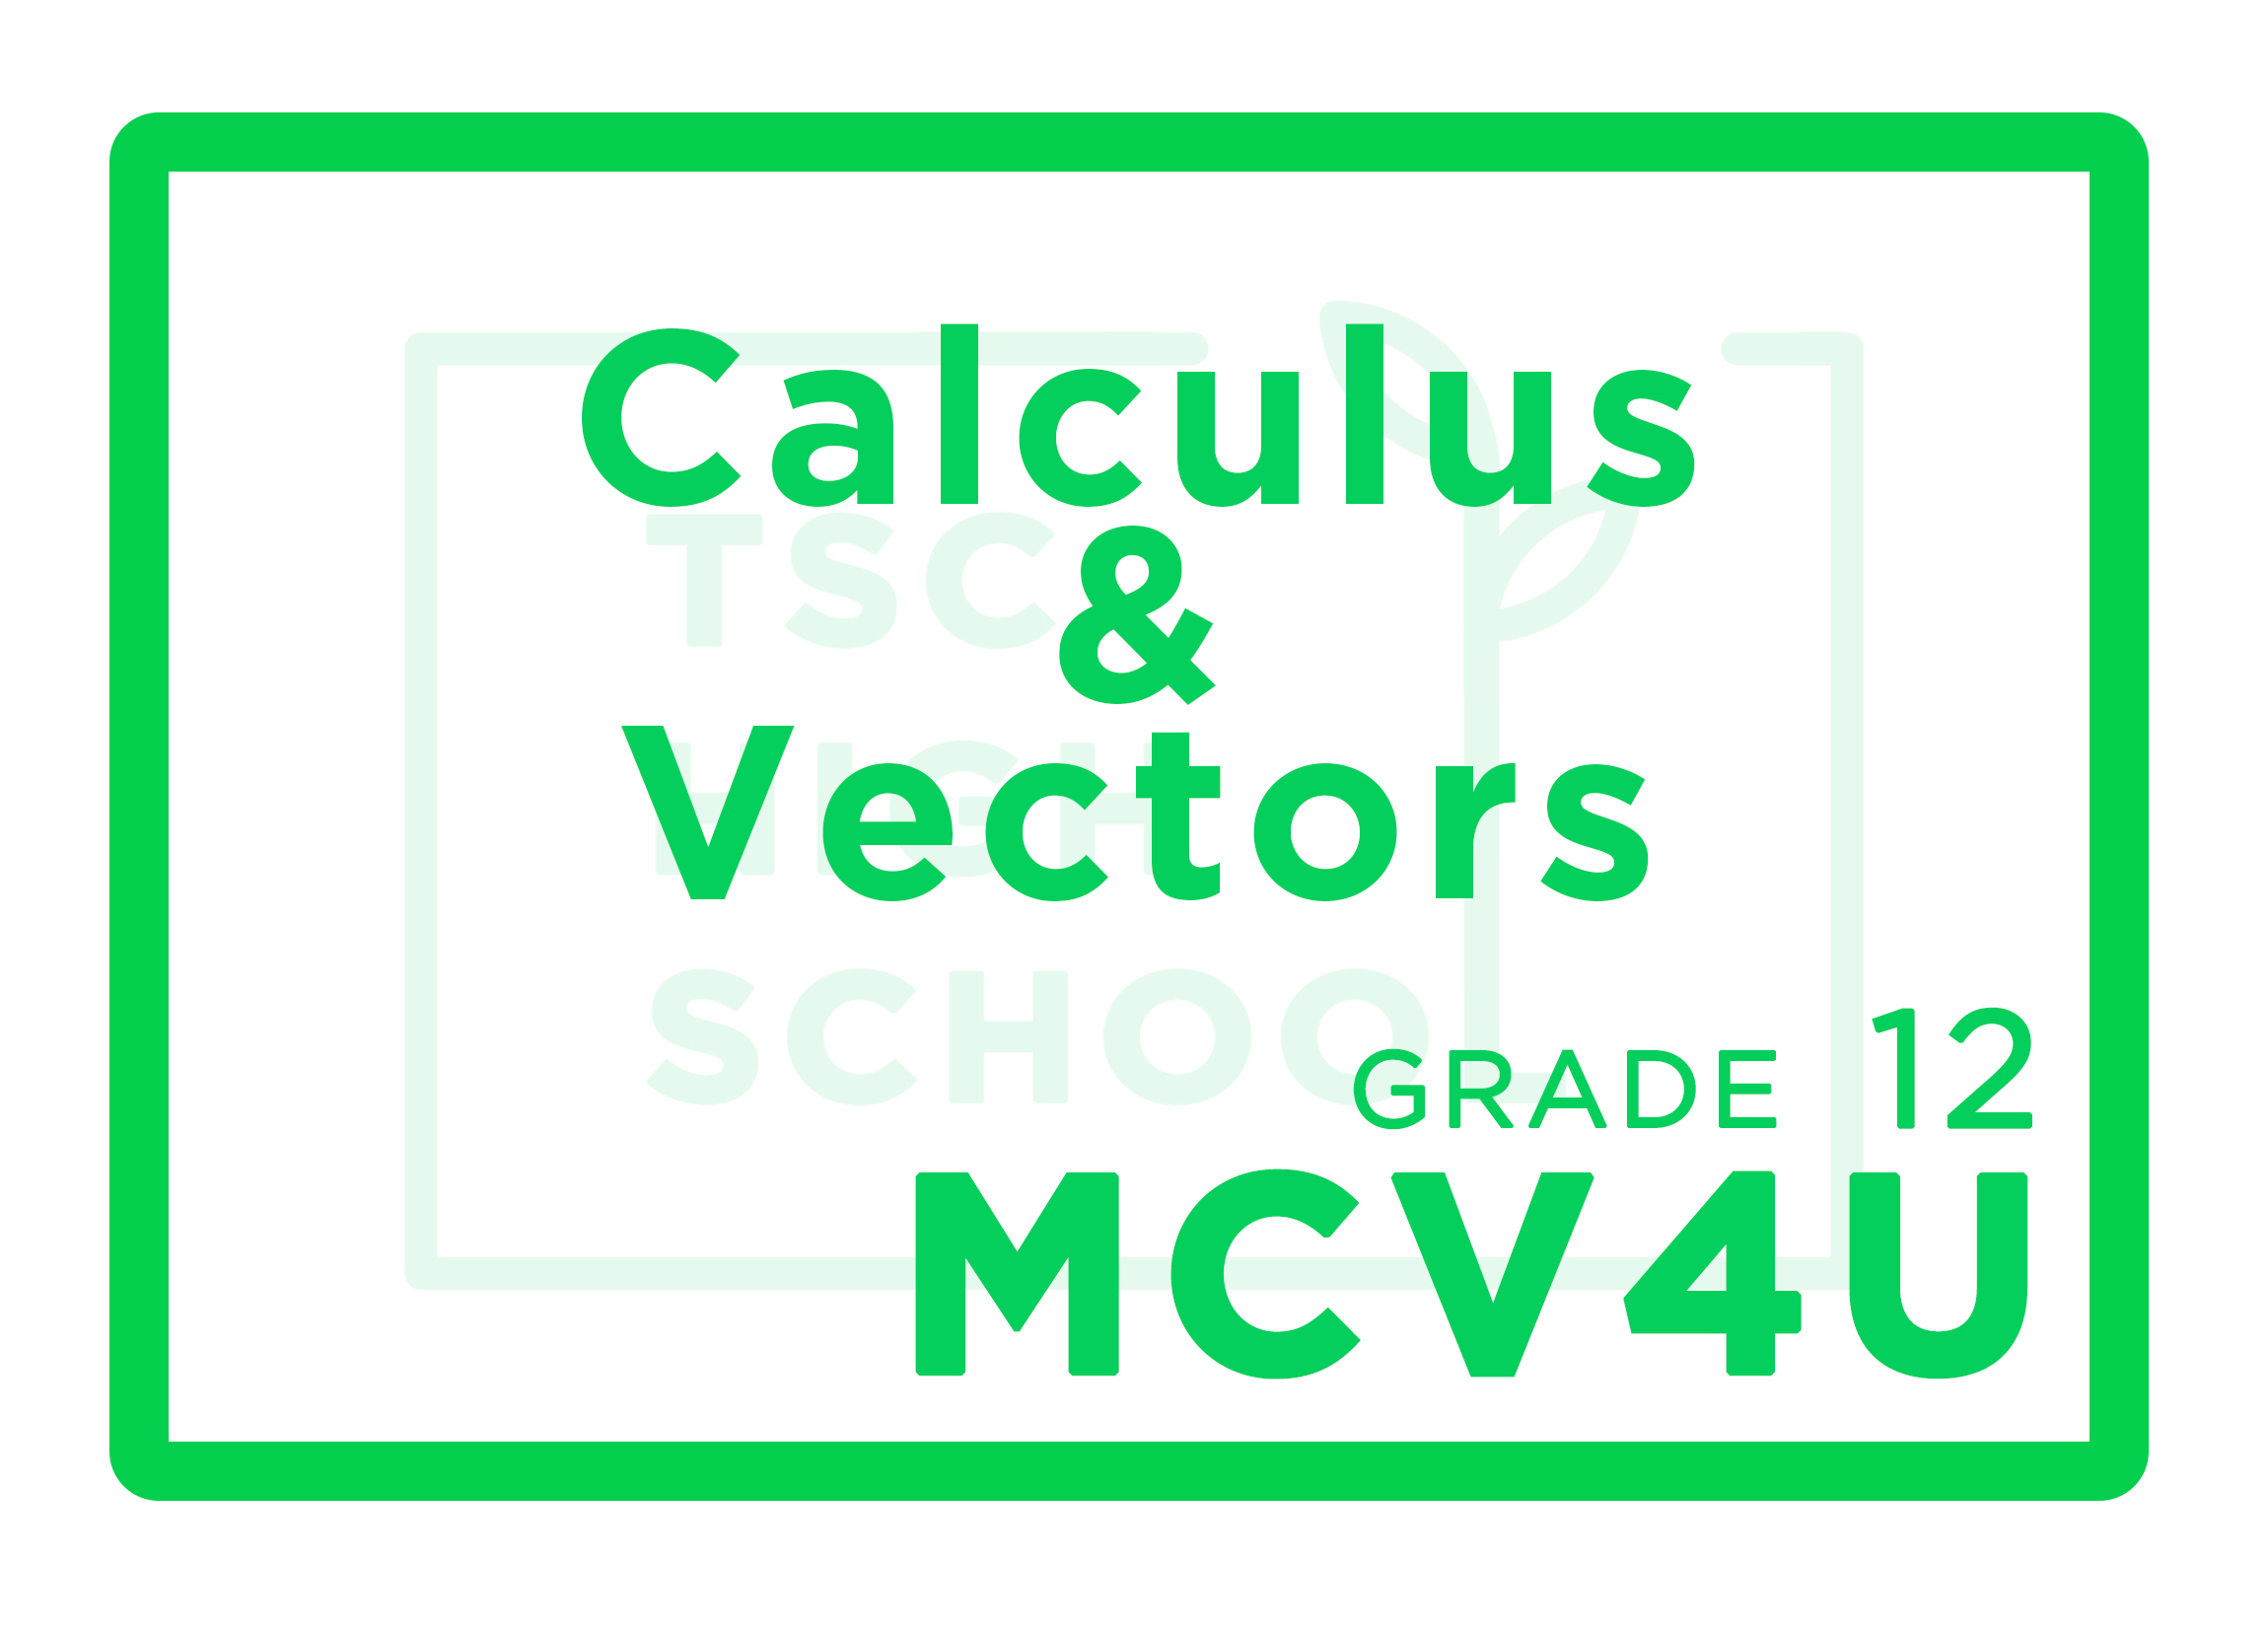 MCV4U